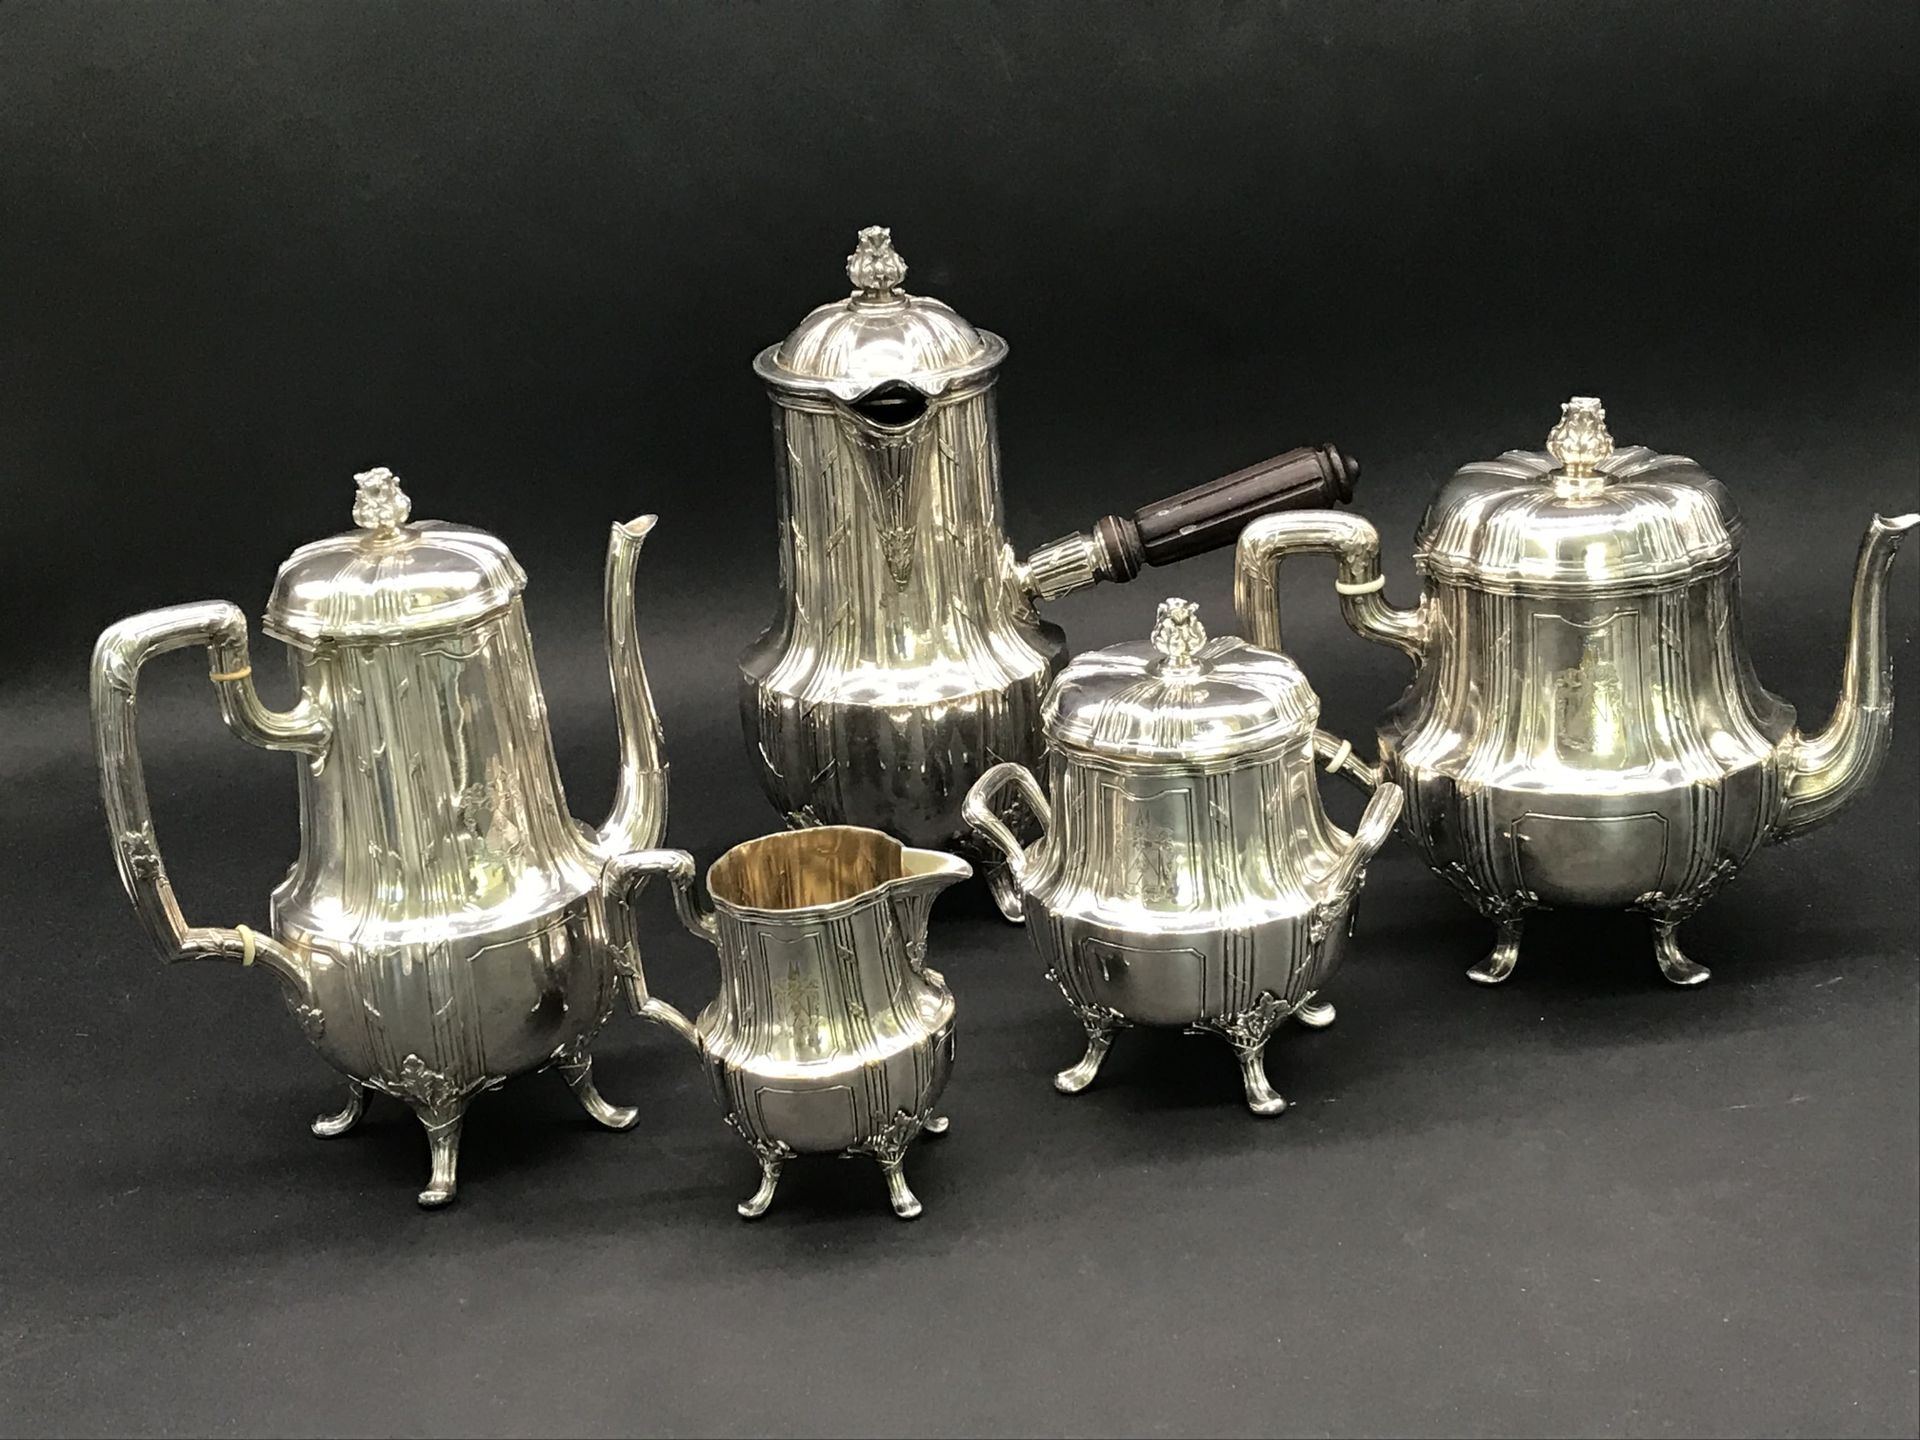 Null 凯拉尔-巴亚尔

路易十五风格的镀银巧克力、茶和咖啡套装

一个巧克力壶、一个咖啡壶、一个茶壶、一个糖罐和一个牛奶罐

每件作品上都刻有武器